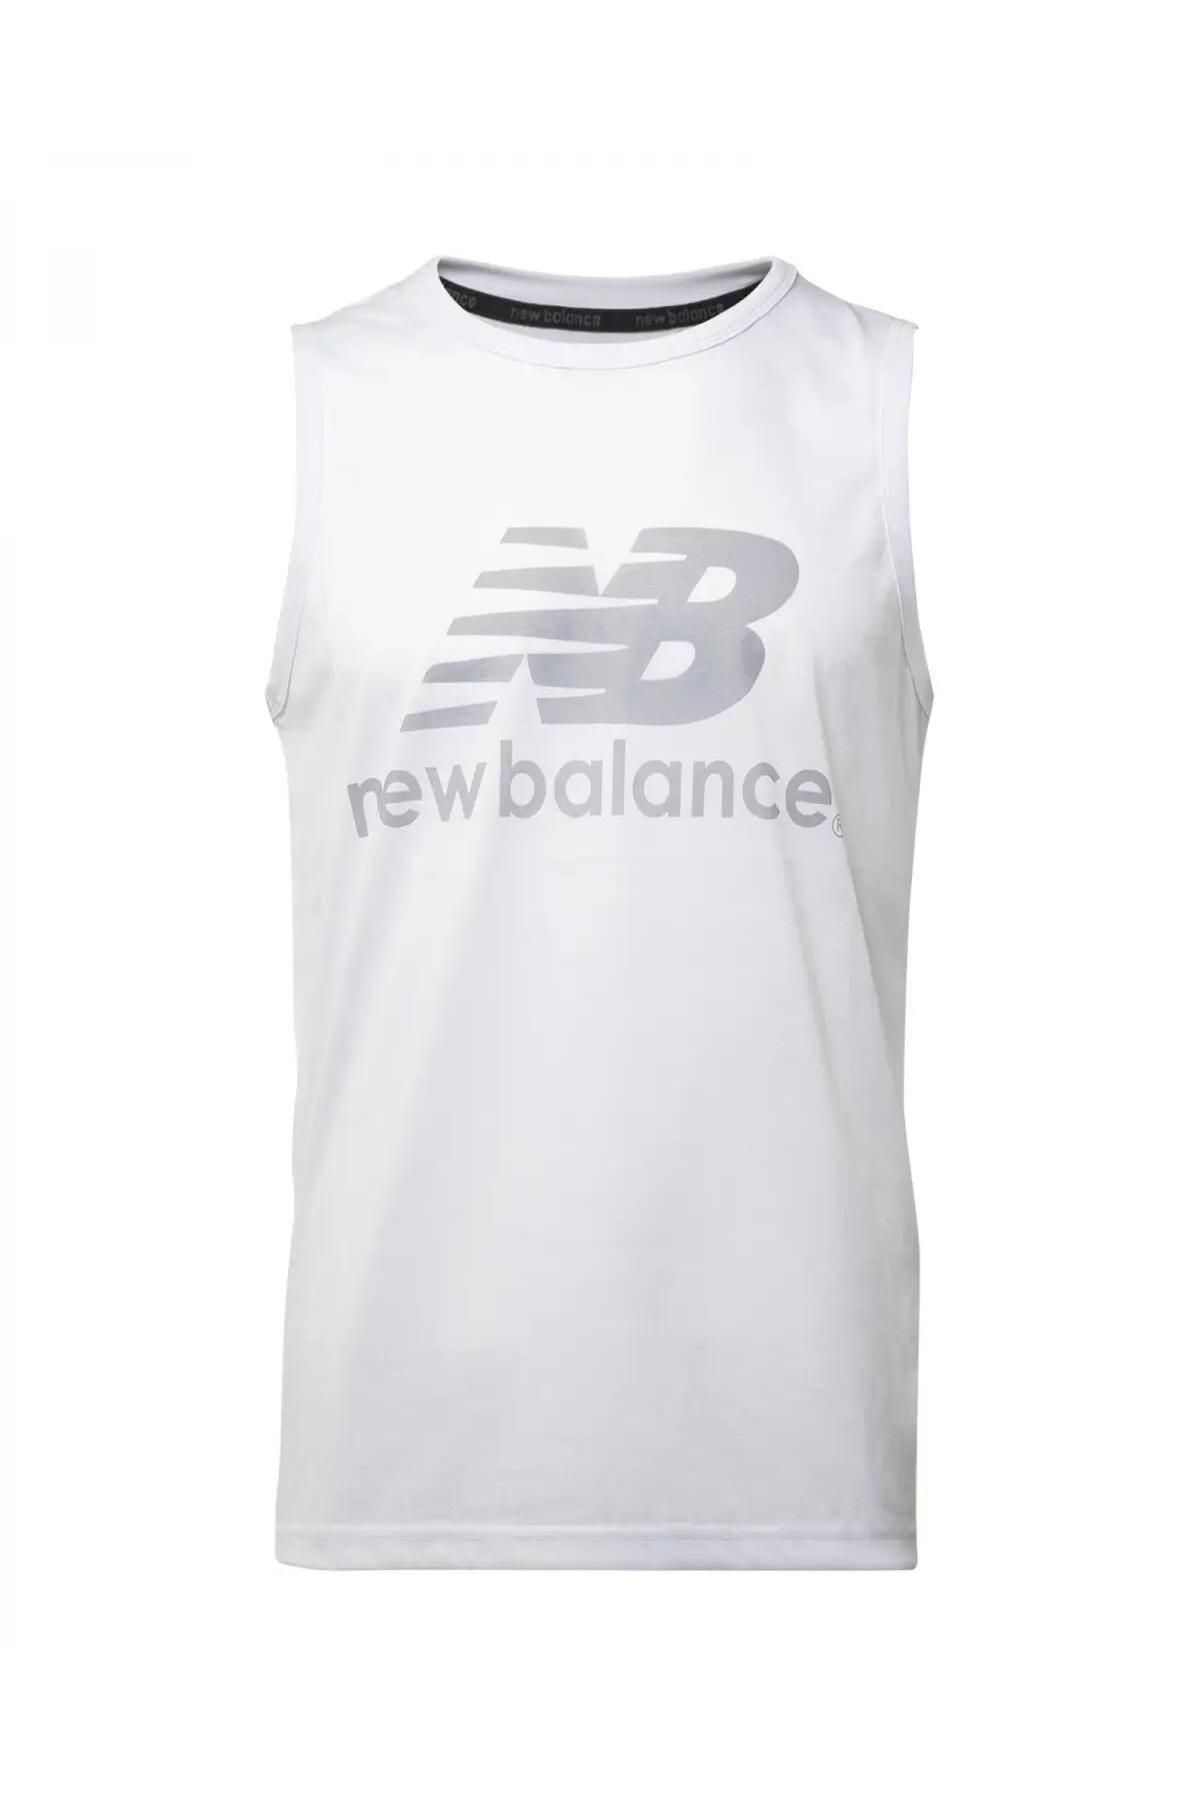 New Balance TST2209-WT Erkek Ter Atleti